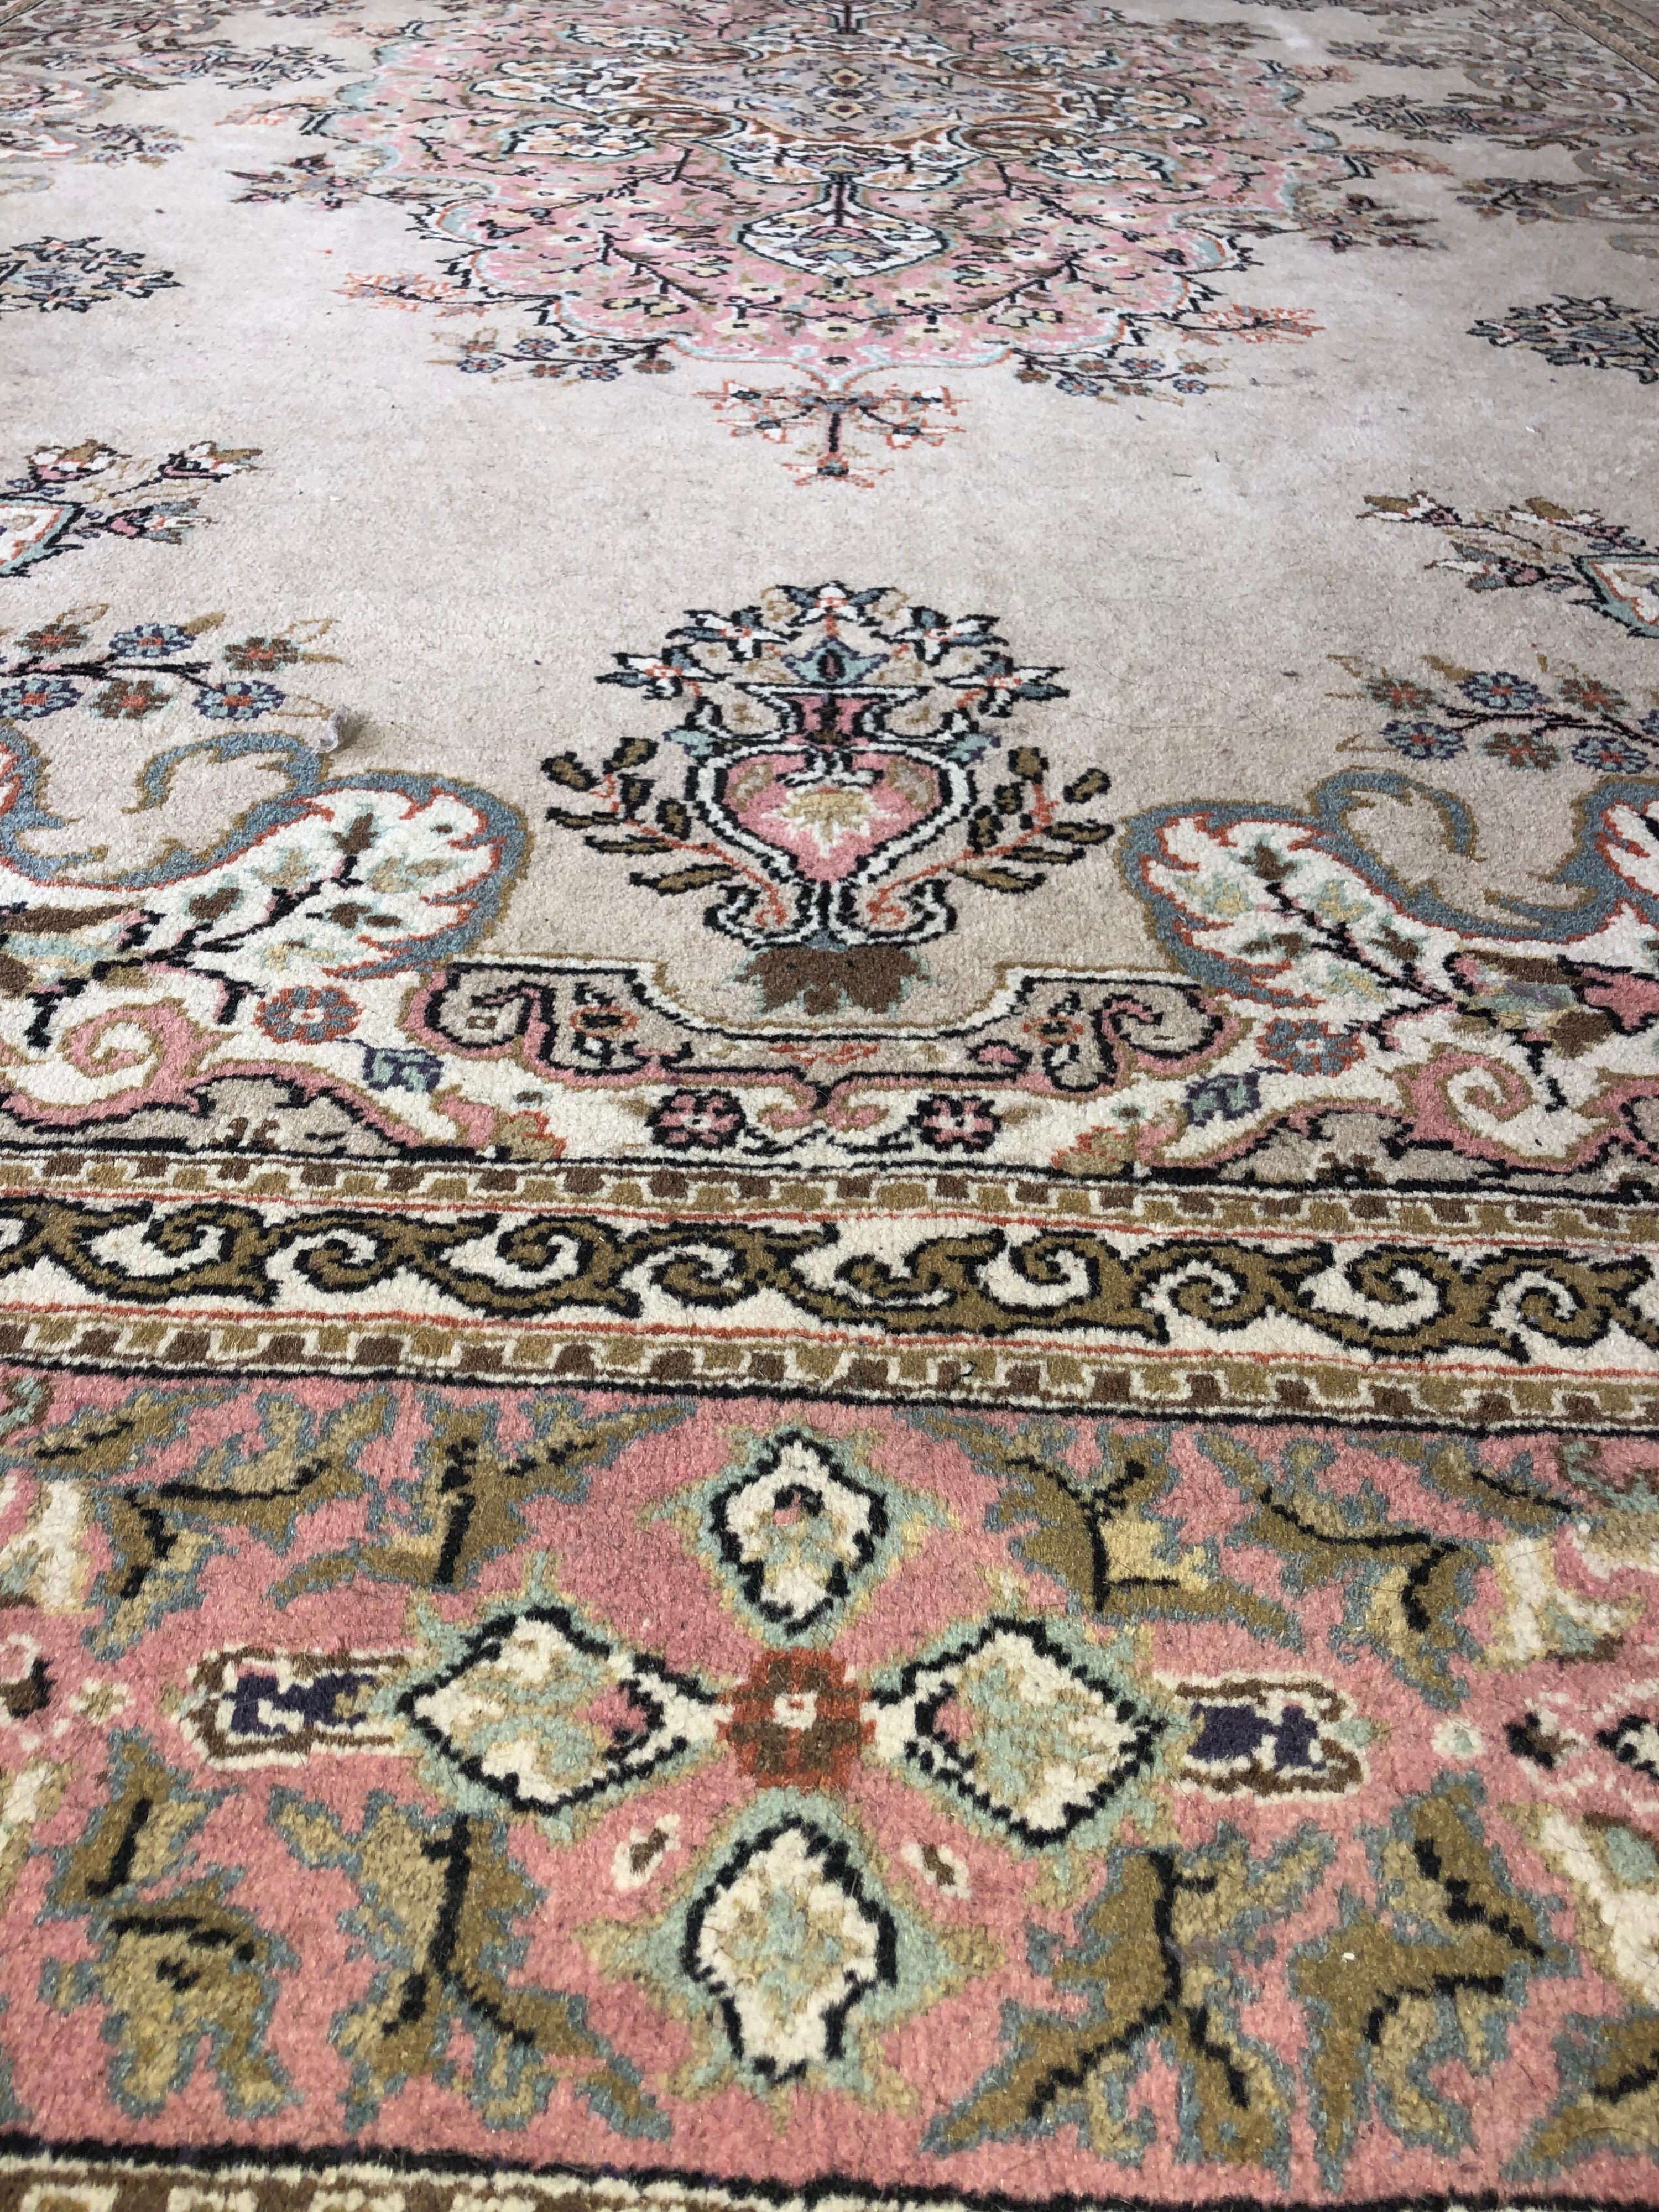 Mid-Century Modern Turkish Large Carpet Kilim Pink Blue Floral Motives Elegant Asian Design SALE 